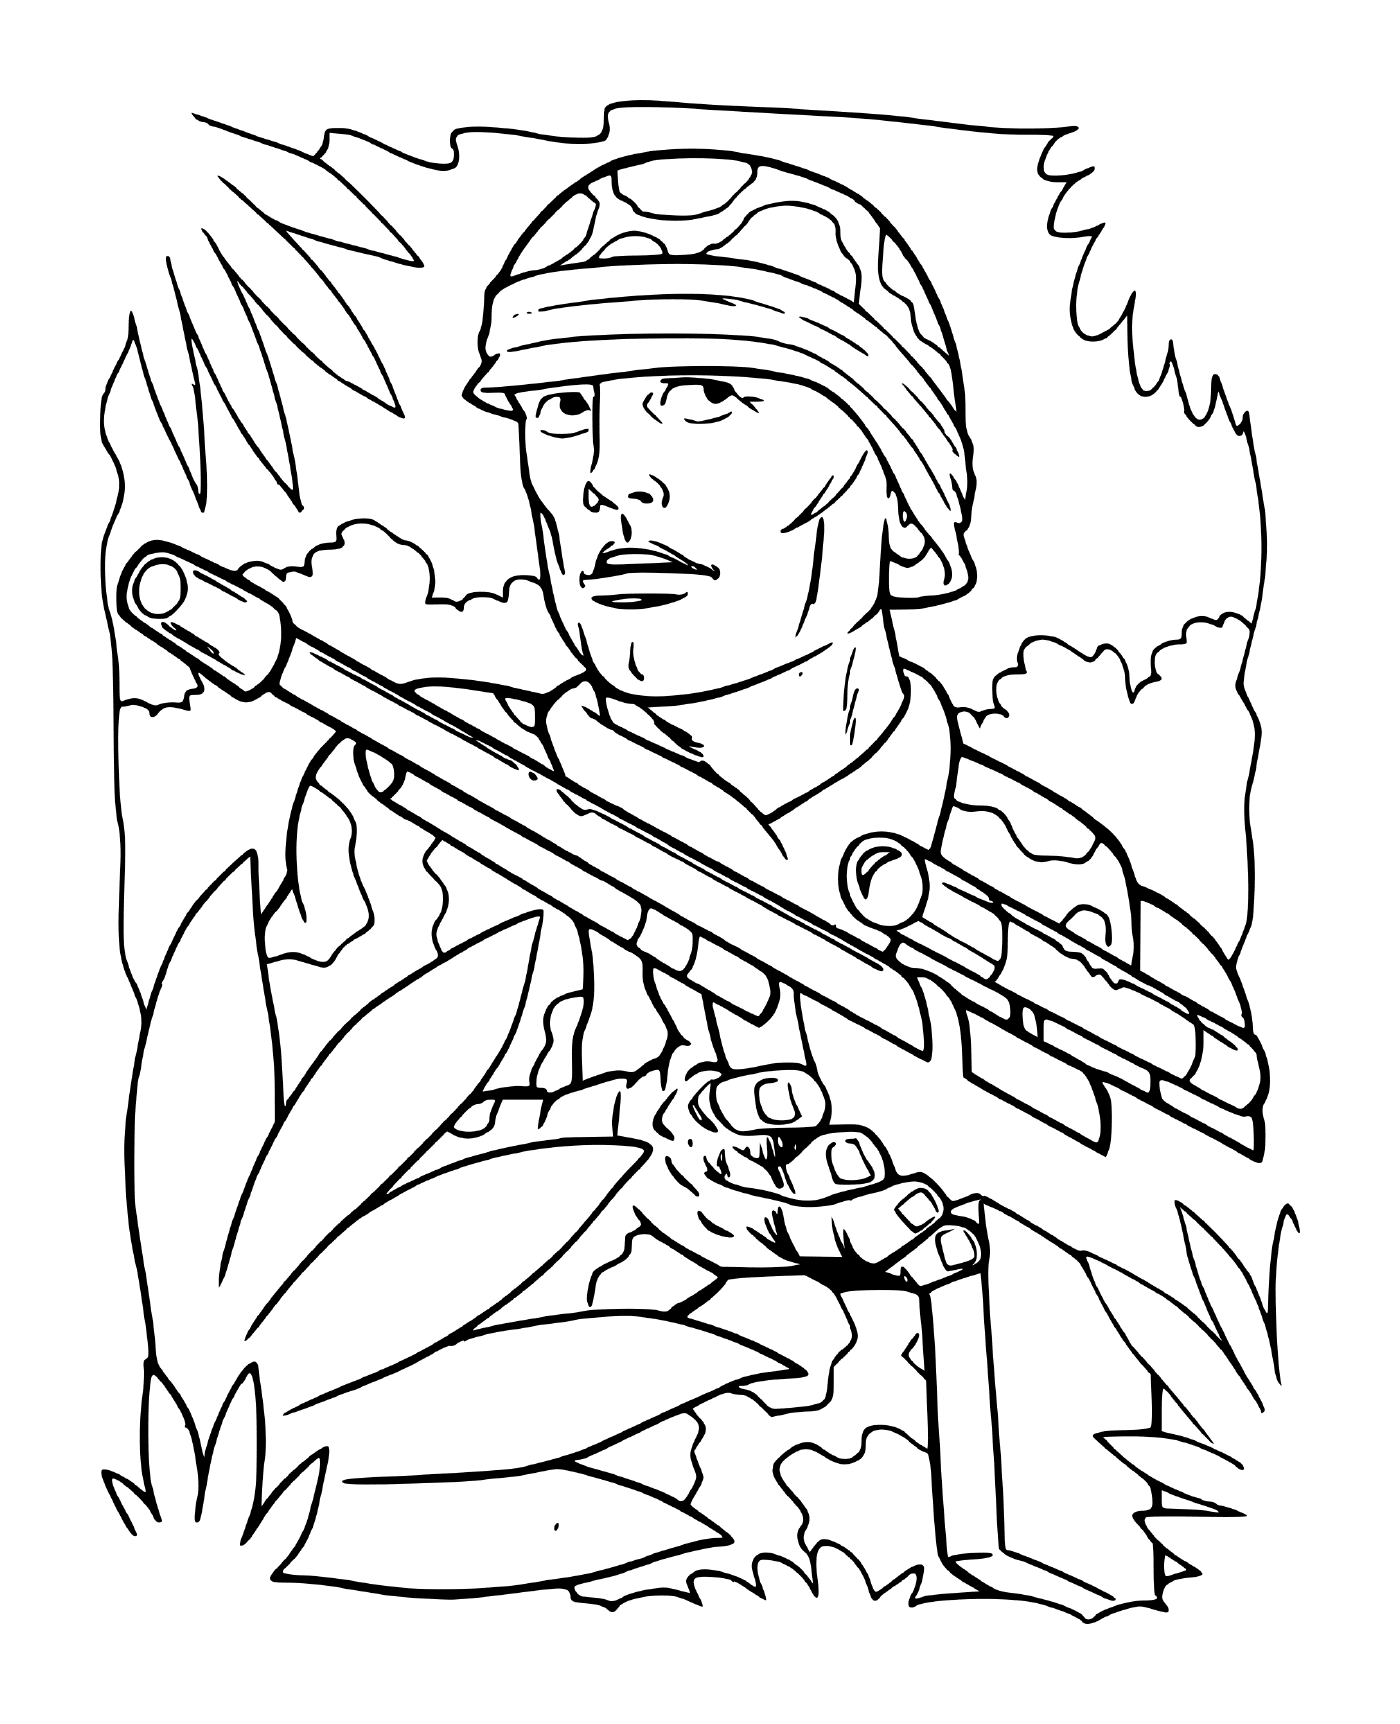  Soldato di guerra nella foresta: un soldato che tiene un fucile in una foresta 